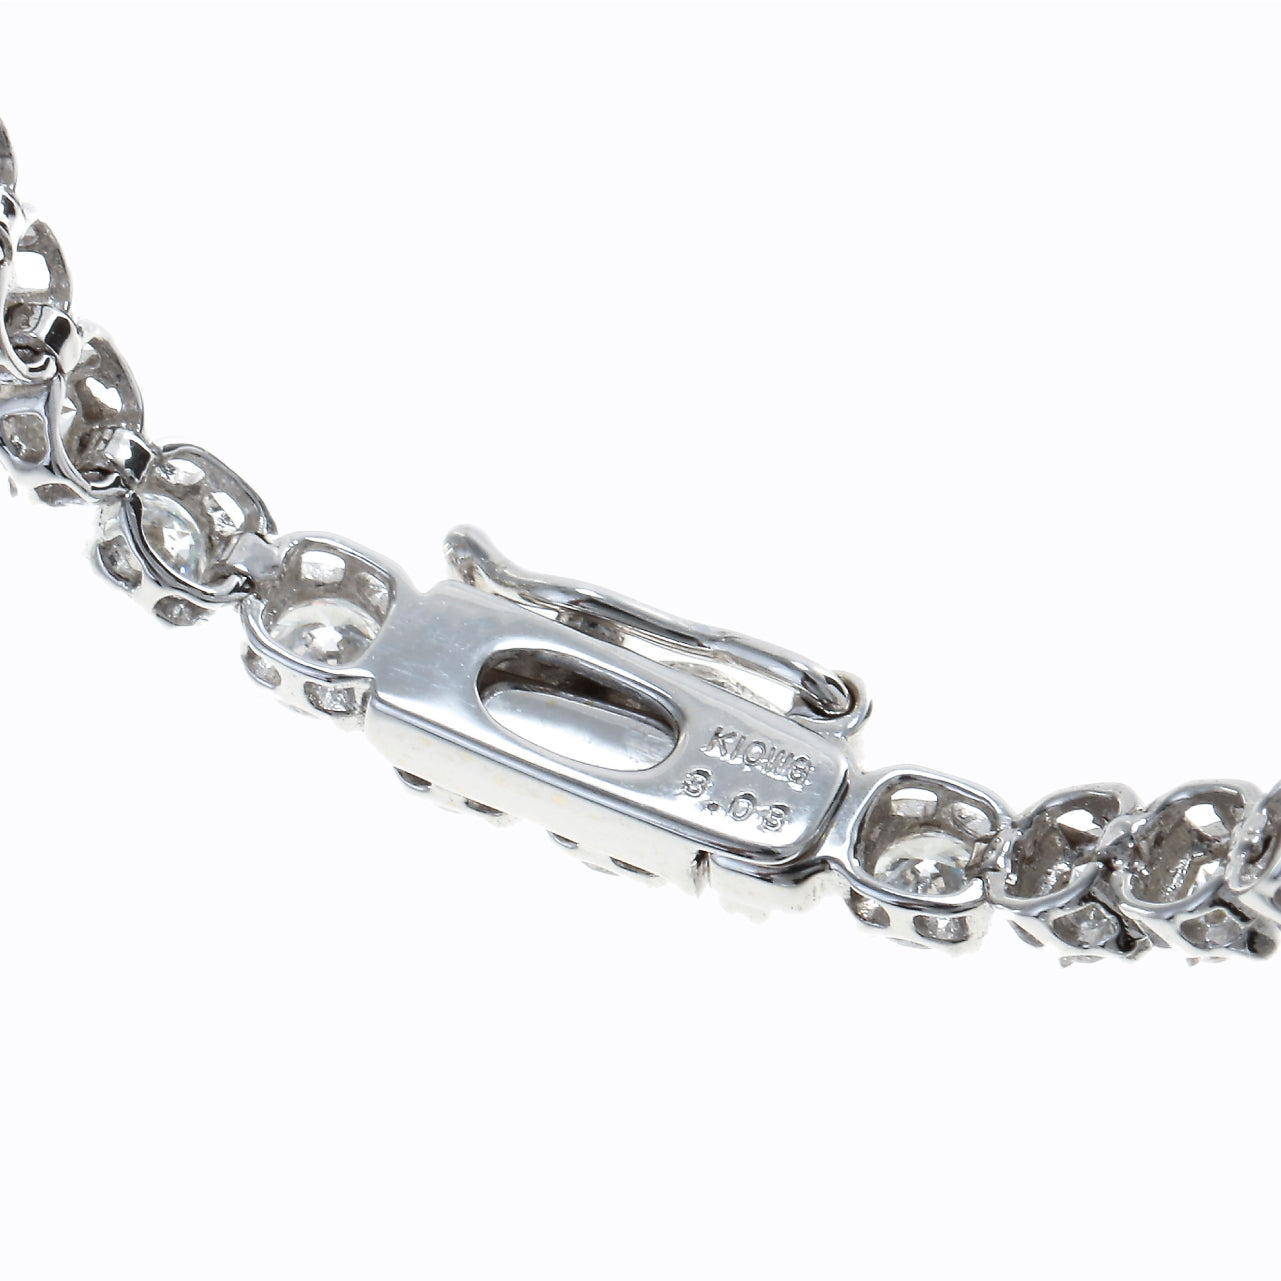 【ｵｰﾀﾞｰ品】Sparkle Tennis Bracelet S 2.6ct～3.0ct